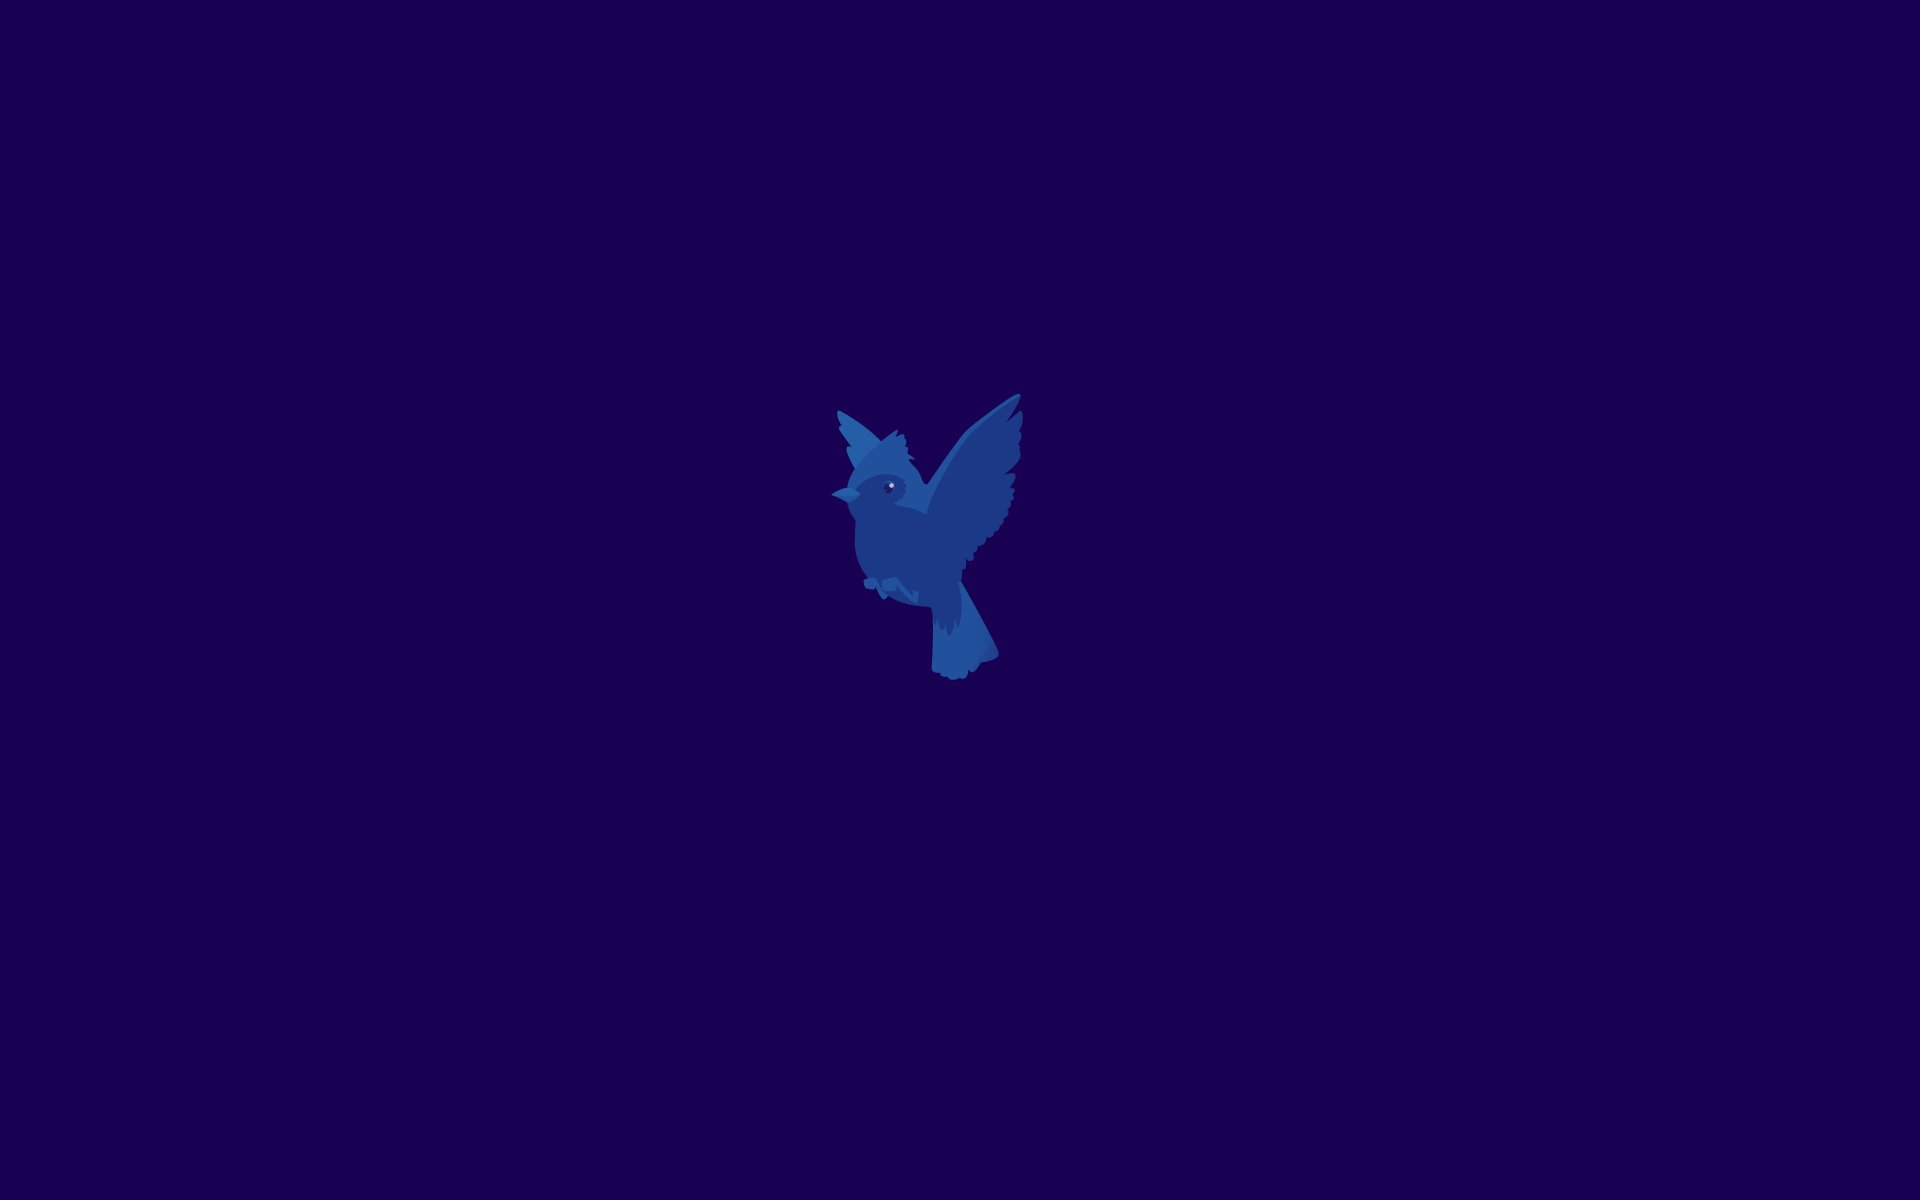 Windows Pro Start Wallpaper Blue Bird By Brebenel Silviu On